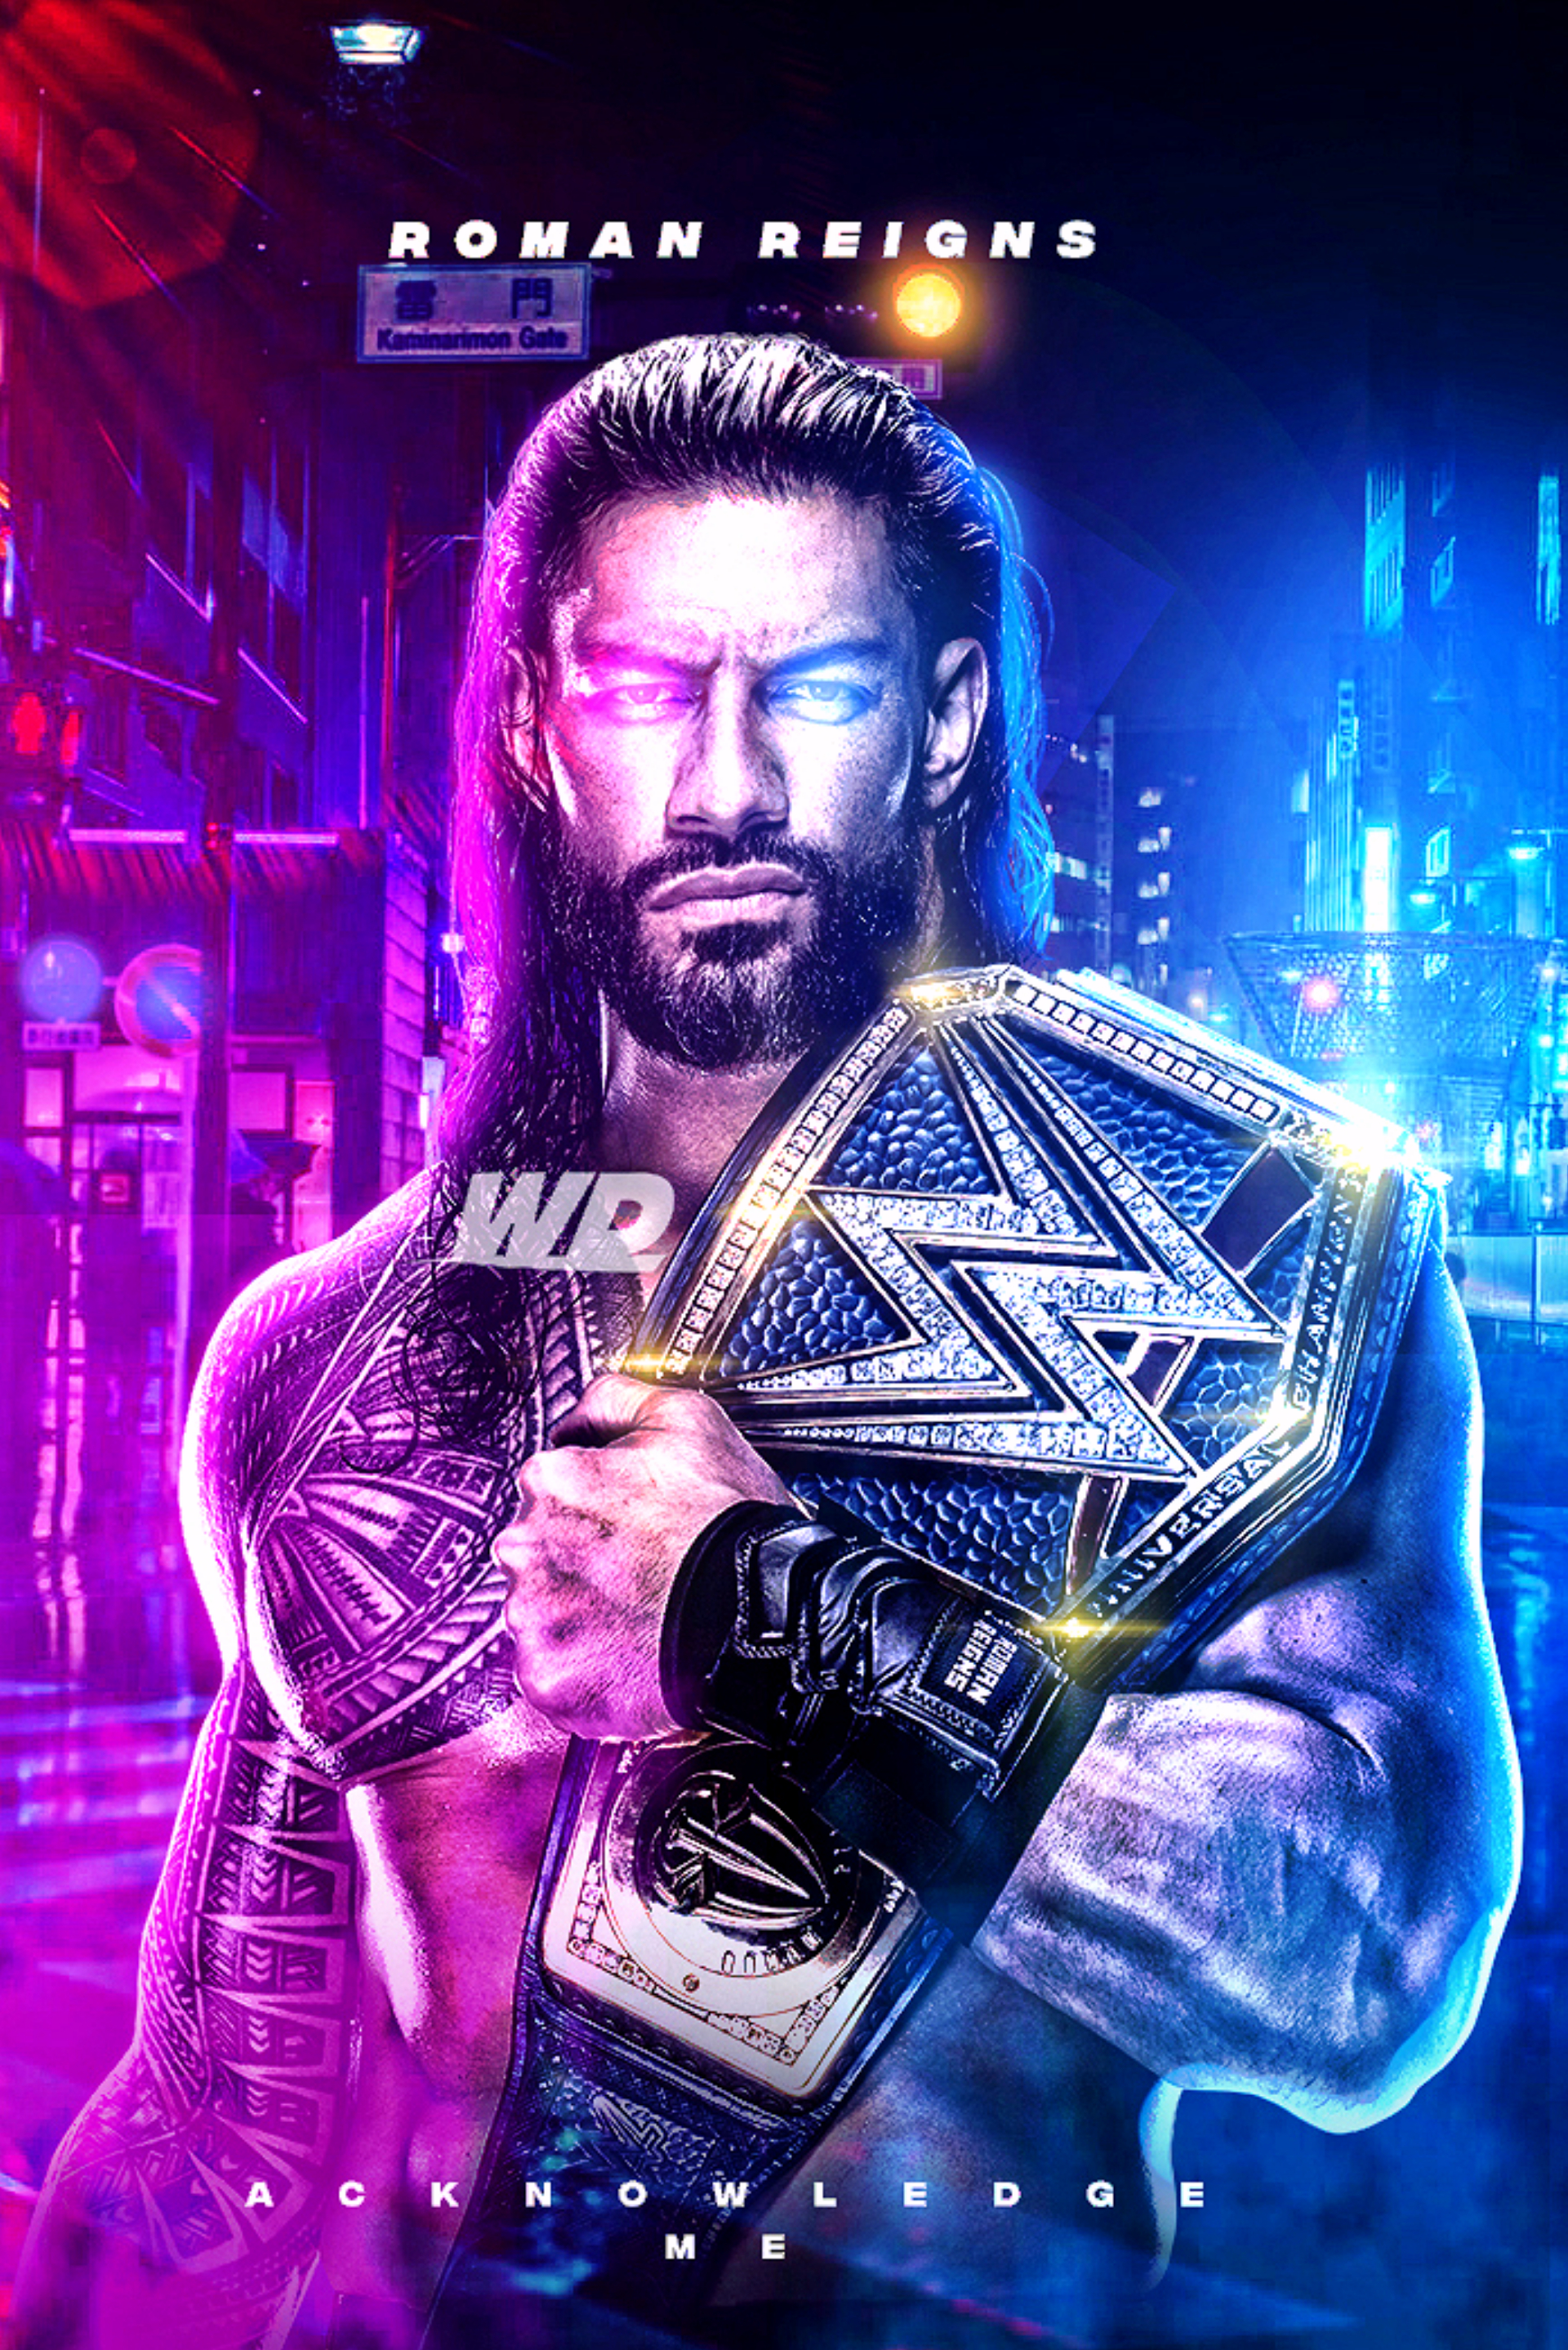 WWE Roman Reigns 2021 New Wallpaper by WrestleDeath90 on DeviantArt